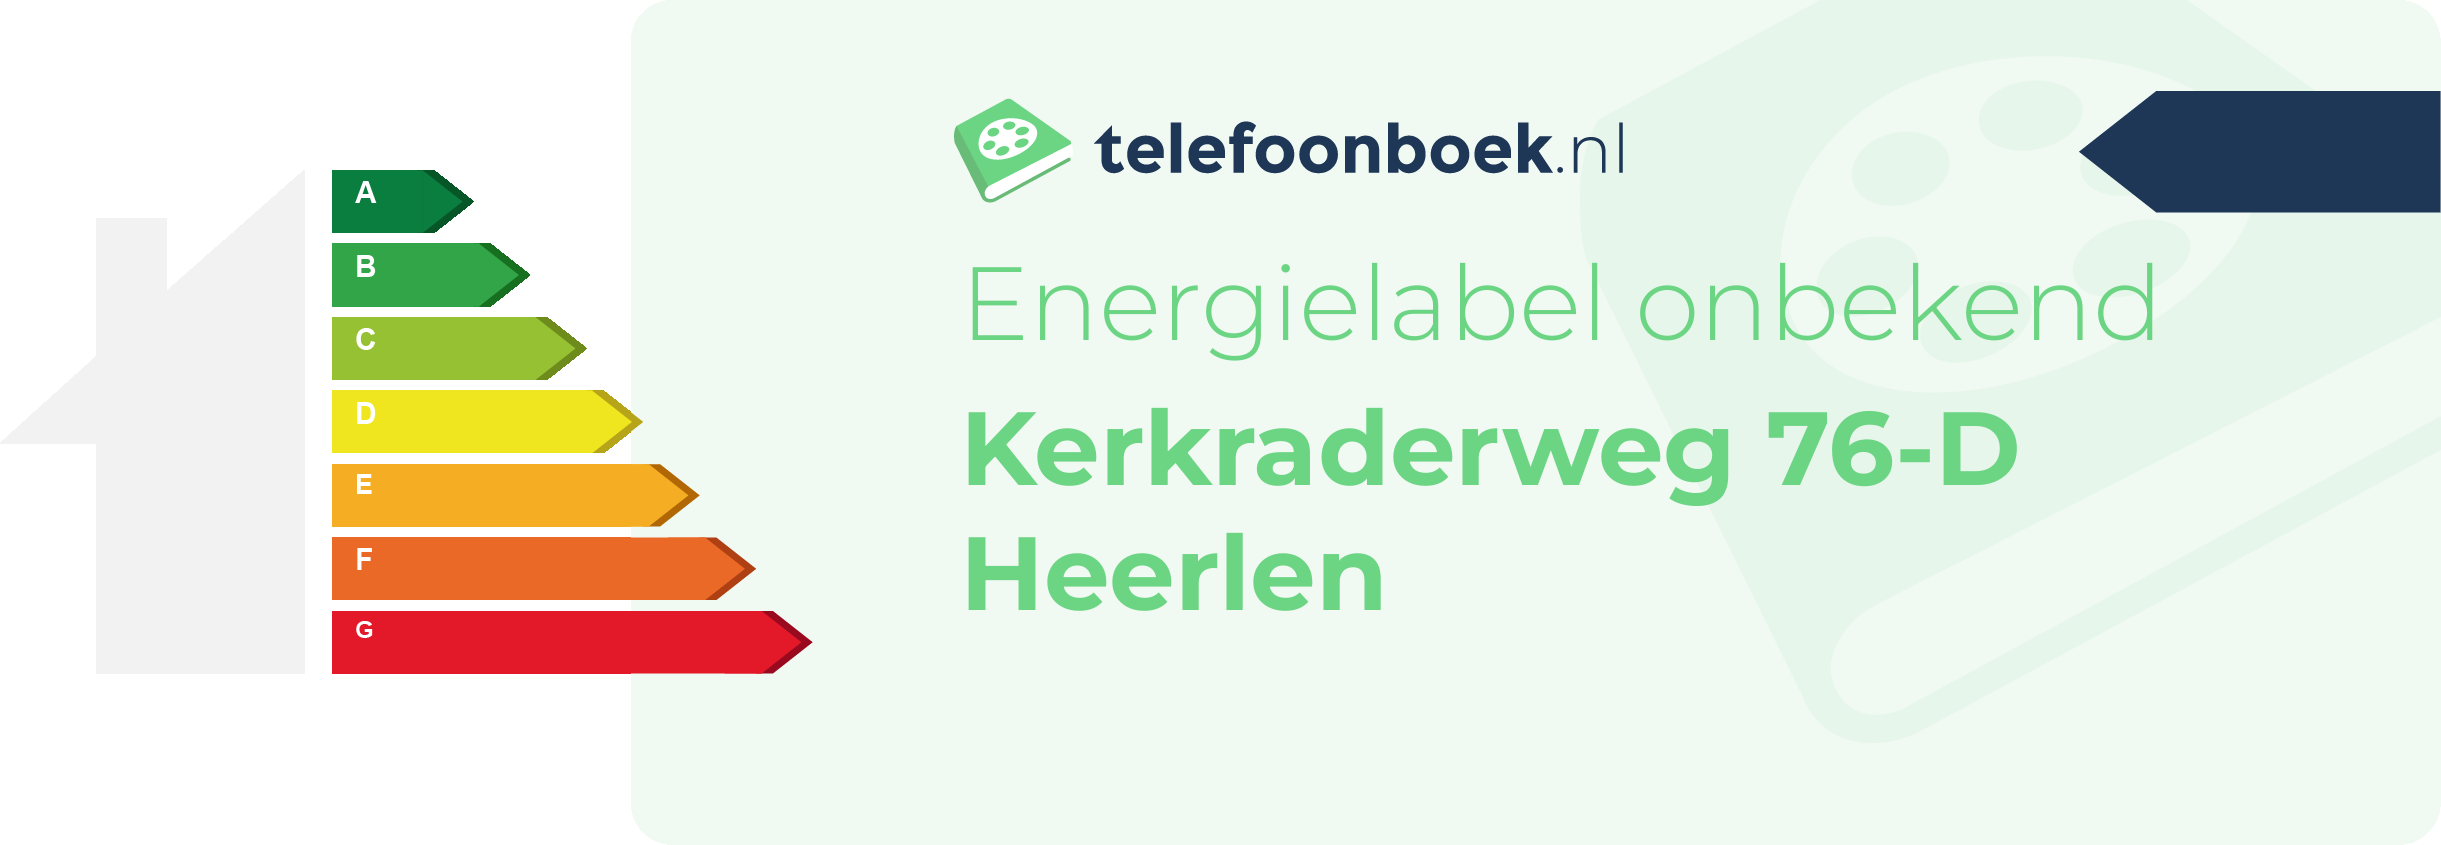 Energielabel Kerkraderweg 76-D Heerlen